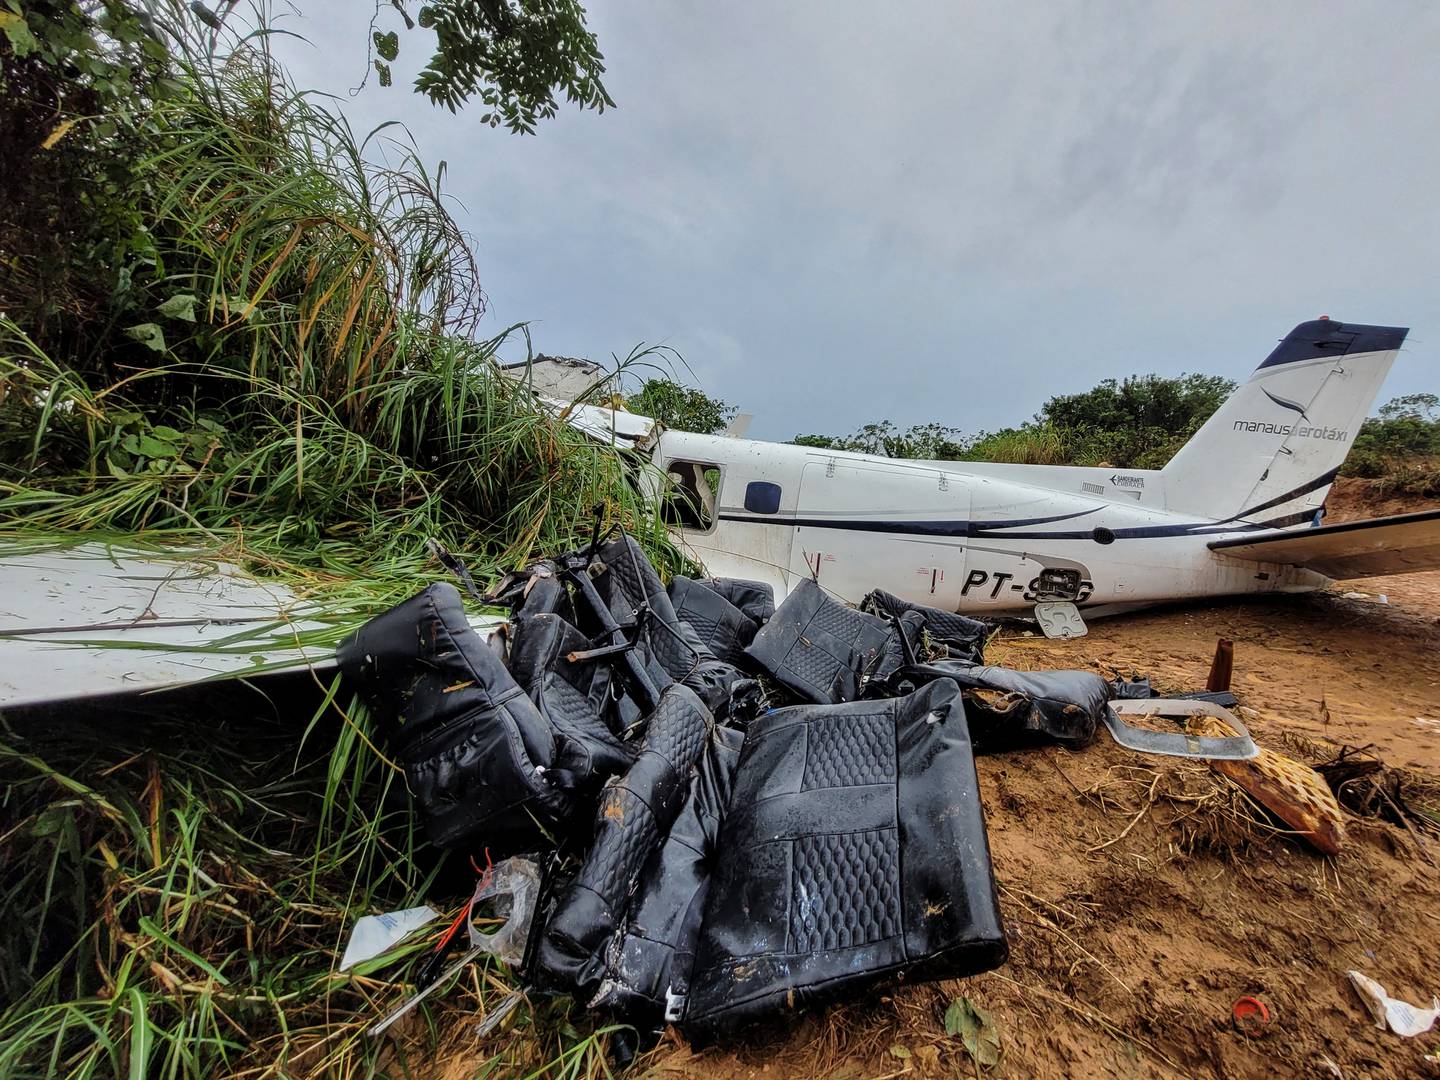 El piloto de la avioneta se acercaba a la remota ciudad bajo una intensa lluvia, con poca visibilidad, y pareció comenzar a aterrizar inadvertidamente a mitad de la pista, dijo el secretario de seguridad del estado de Amazonas, Vinicius Almeida, en una conferencia de prensa.